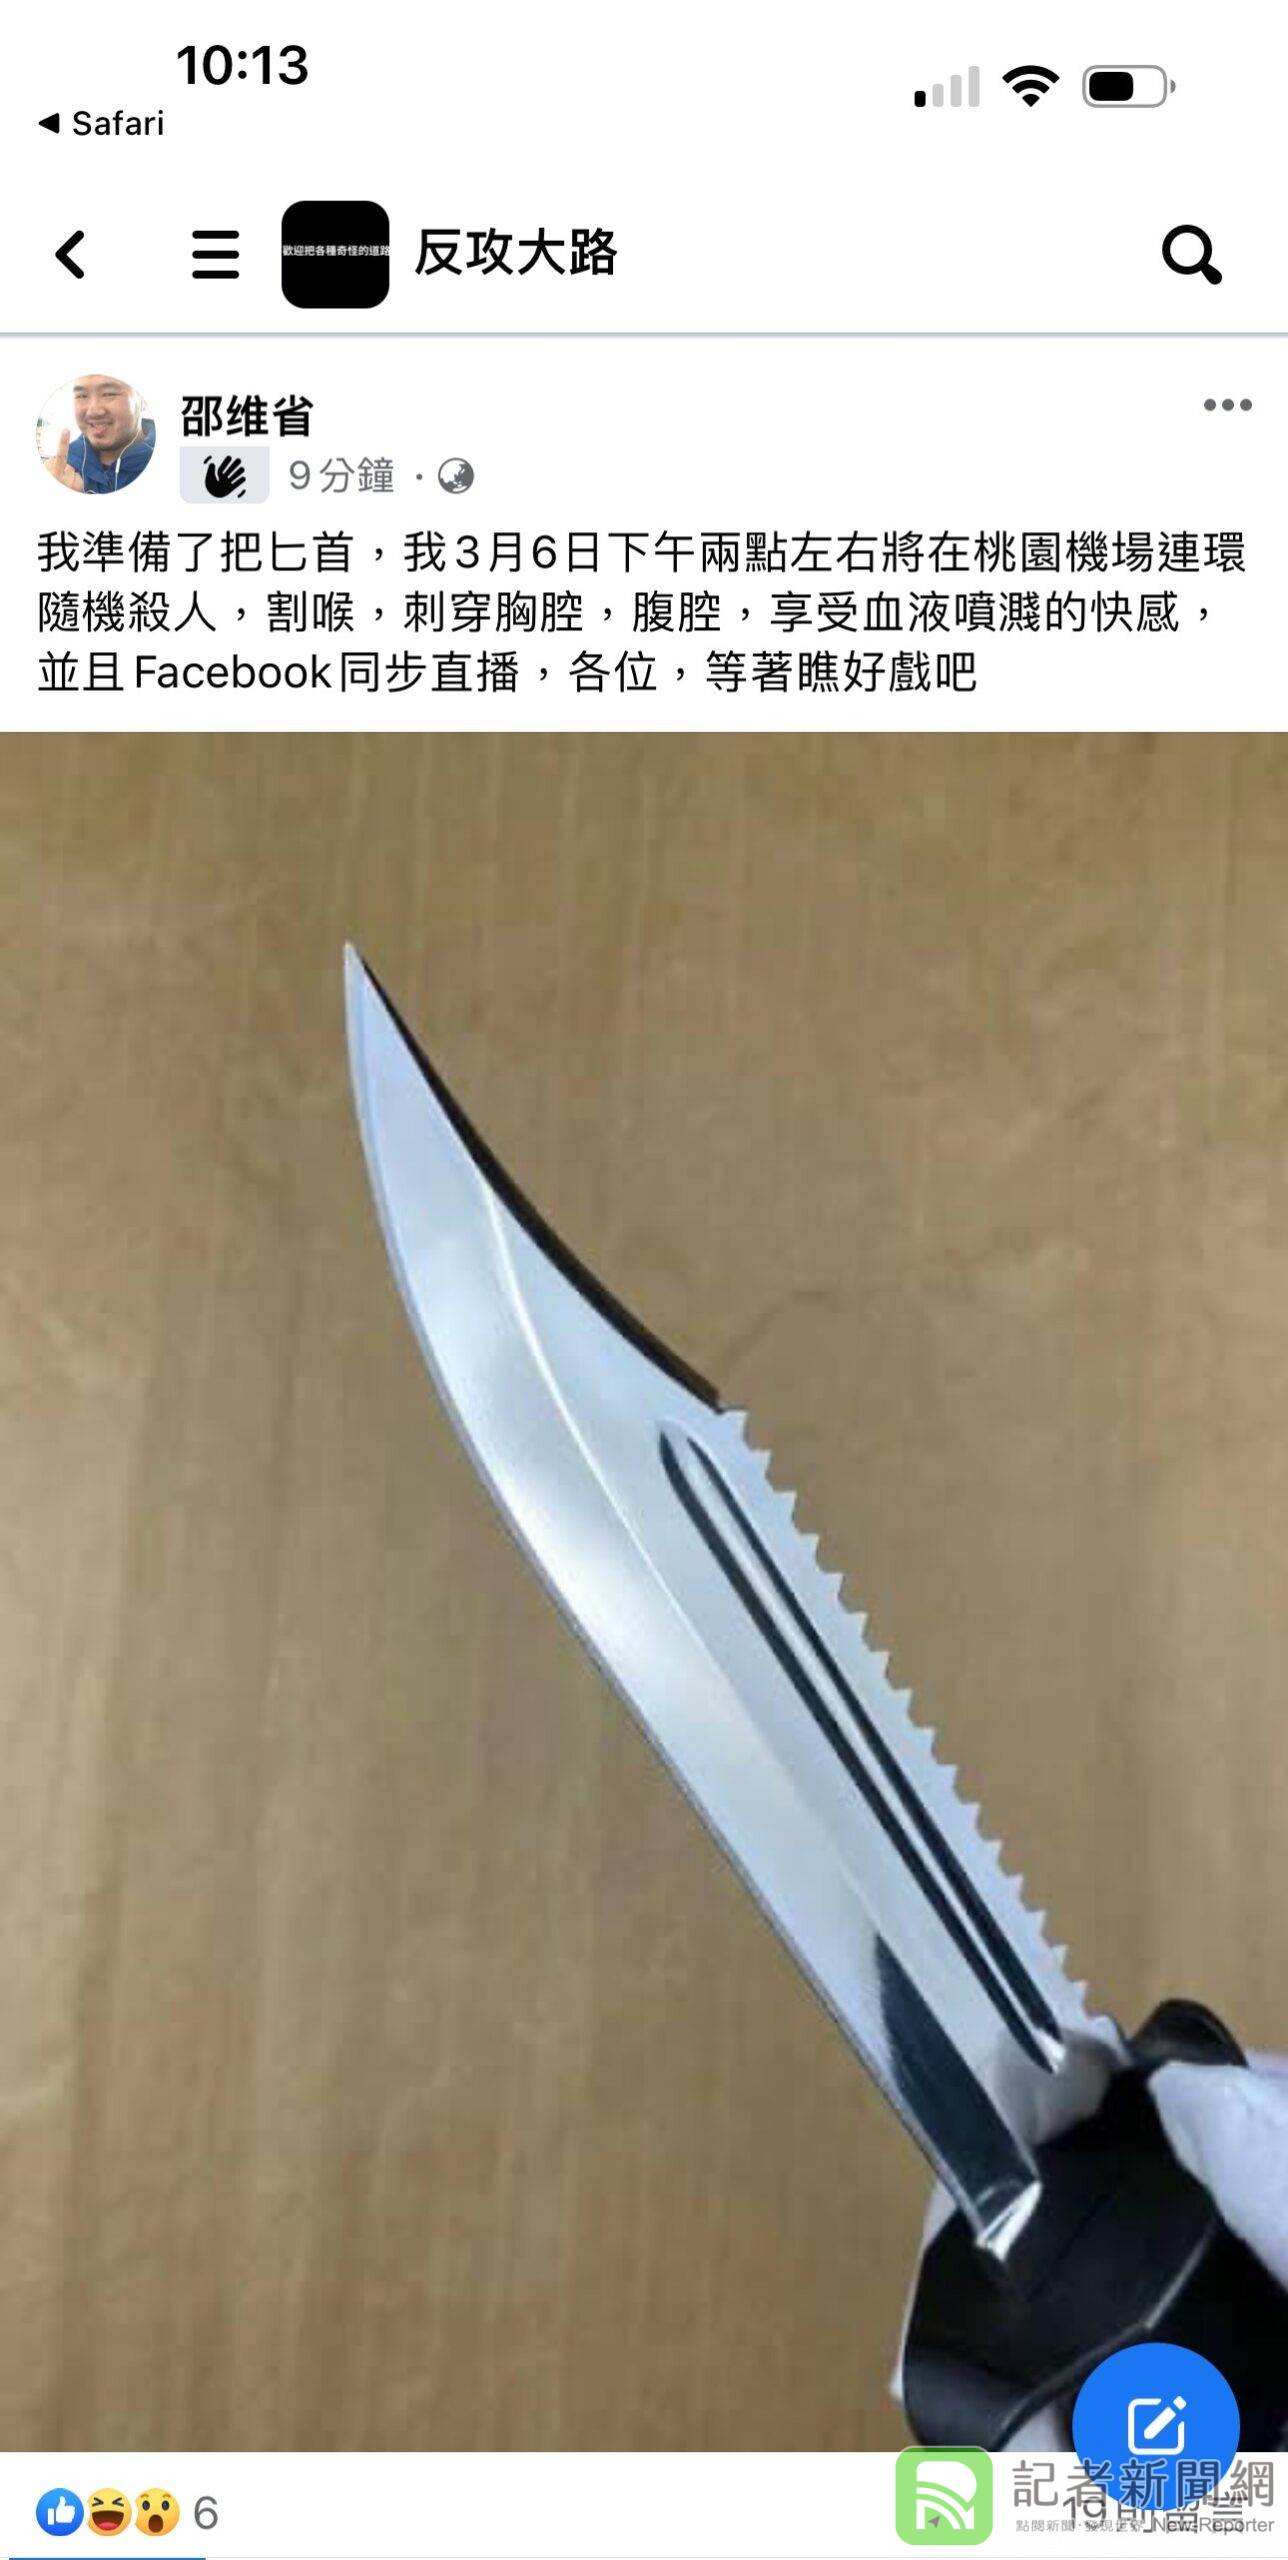 男子臉書發預告文「要在機場隨機殺人」 附匕首照引眾怒 警追緝中